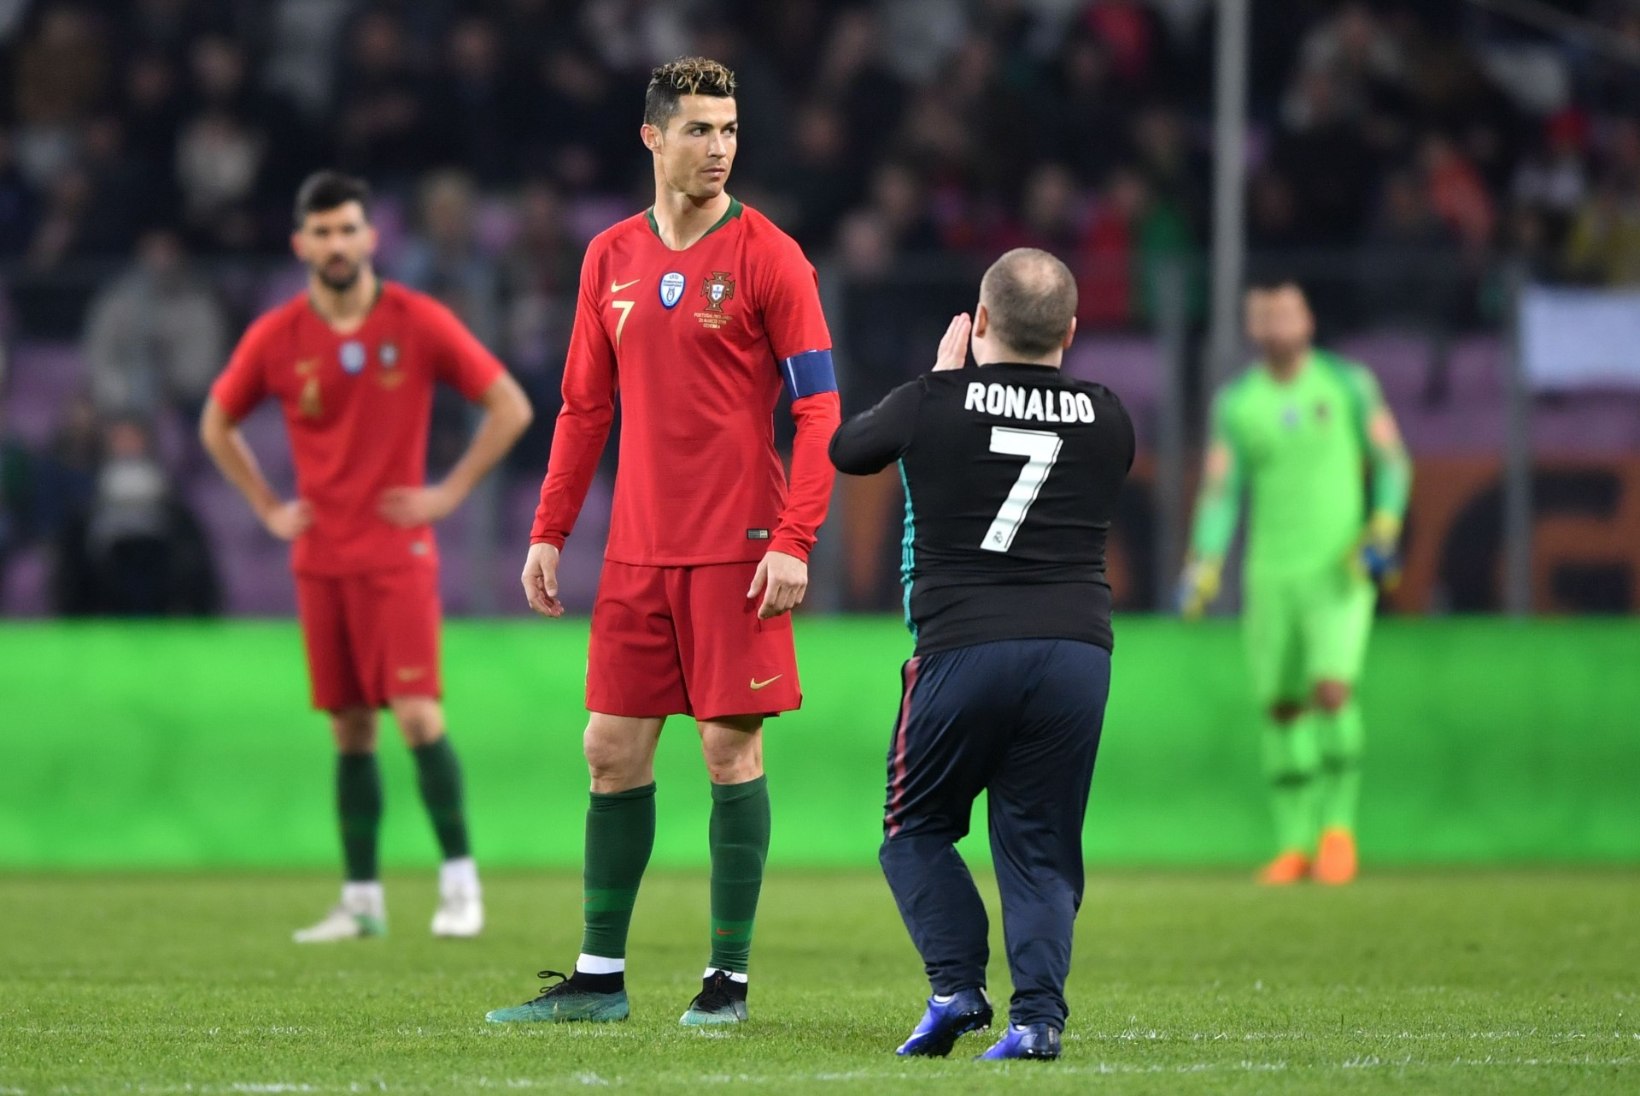 FOTOD | Platsile tormanud fänn üritas Ronaldot suudelda, Portugal sai Hollandilt kolaka